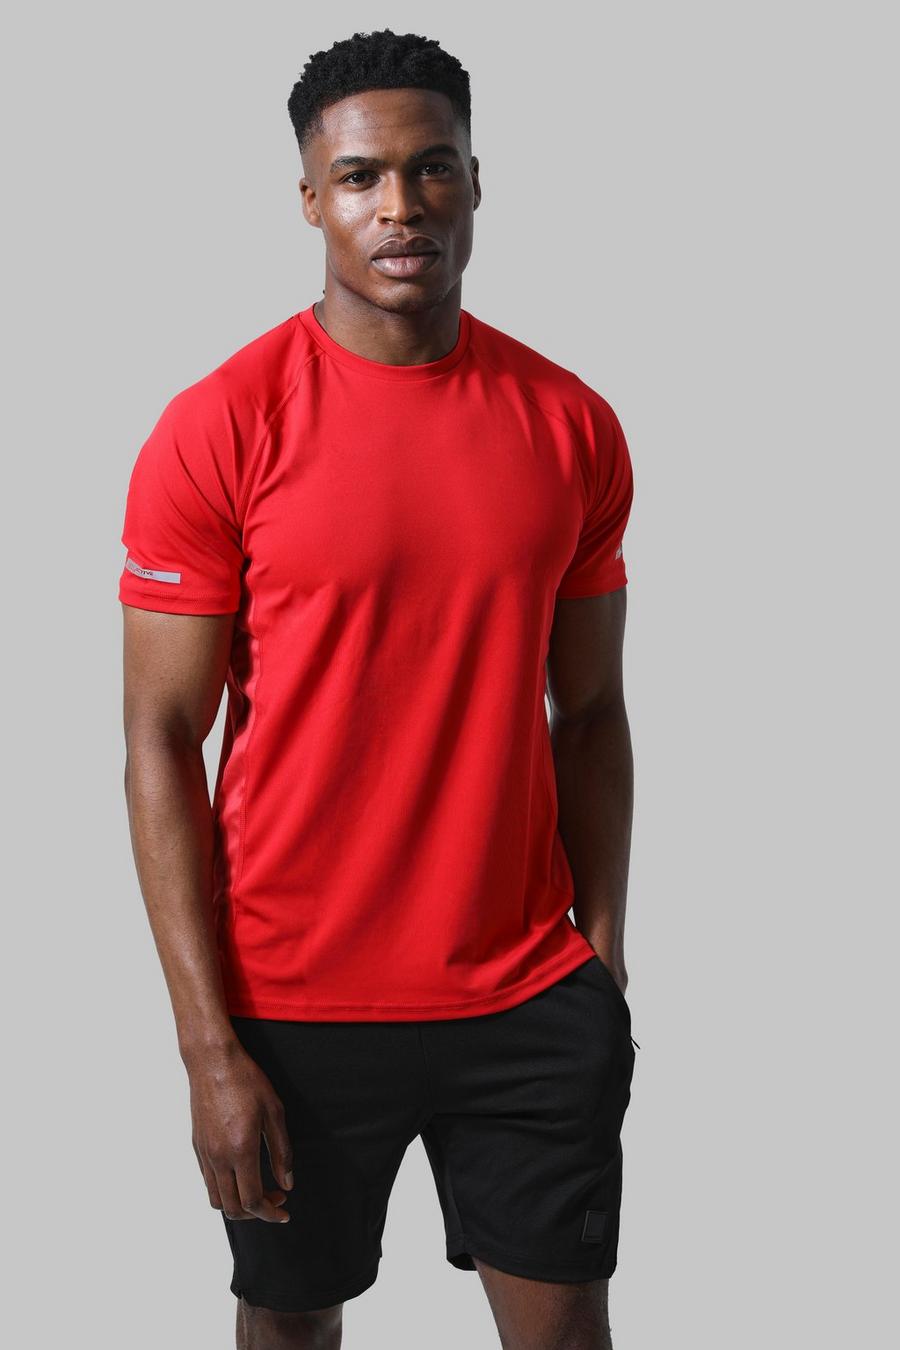 Ensemble de sport avec t-shirt et short - MAN Active, Red rouge